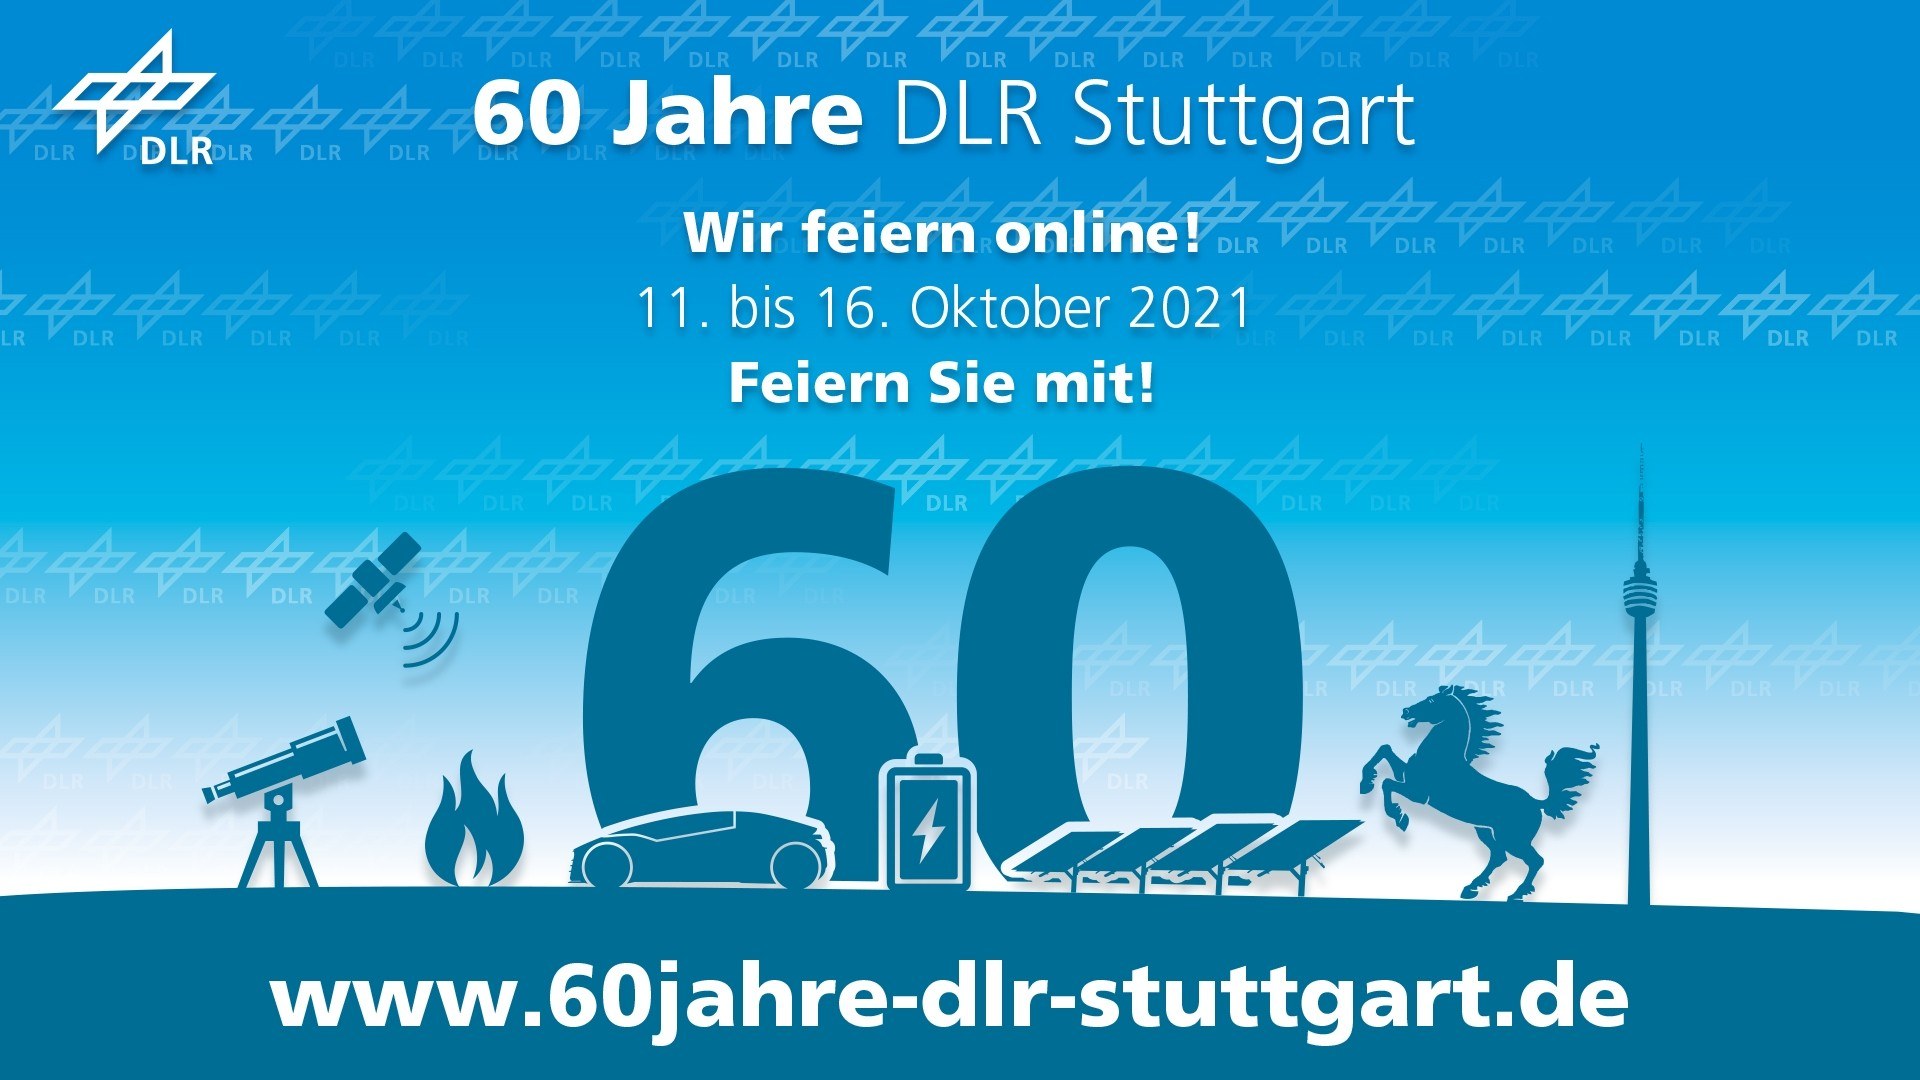 60 Jahre DLR Stuttgart